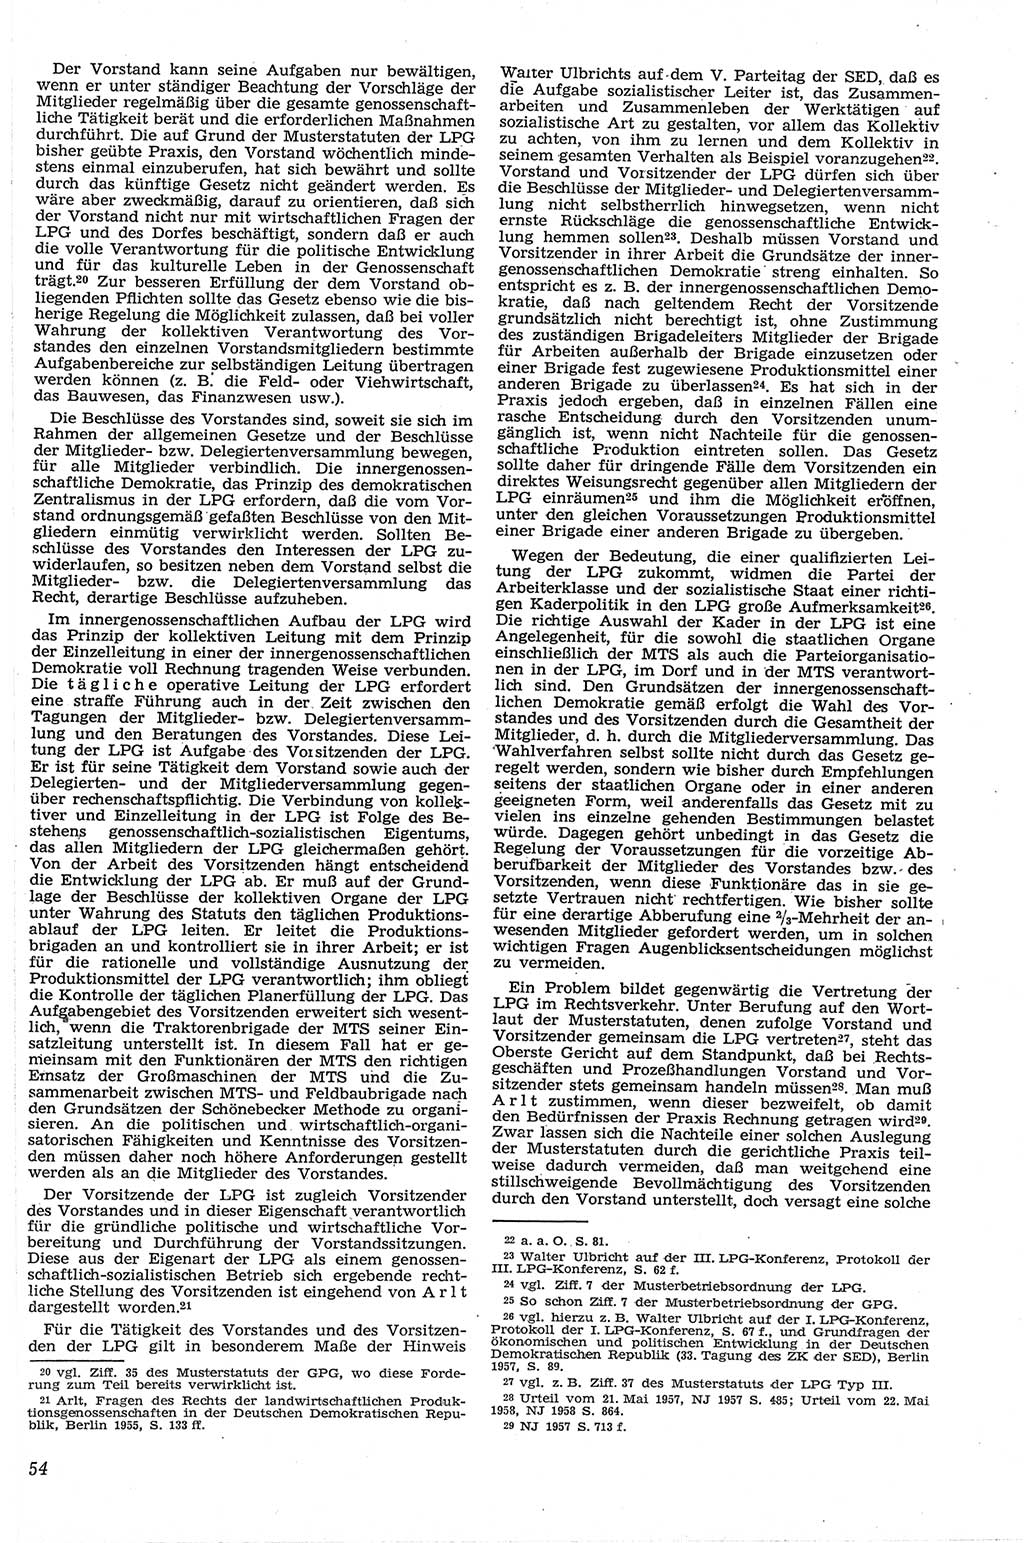 Neue Justiz (NJ), Zeitschrift für Recht und Rechtswissenschaft [Deutsche Demokratische Republik (DDR)], 13. Jahrgang 1959, Seite 54 (NJ DDR 1959, S. 54)